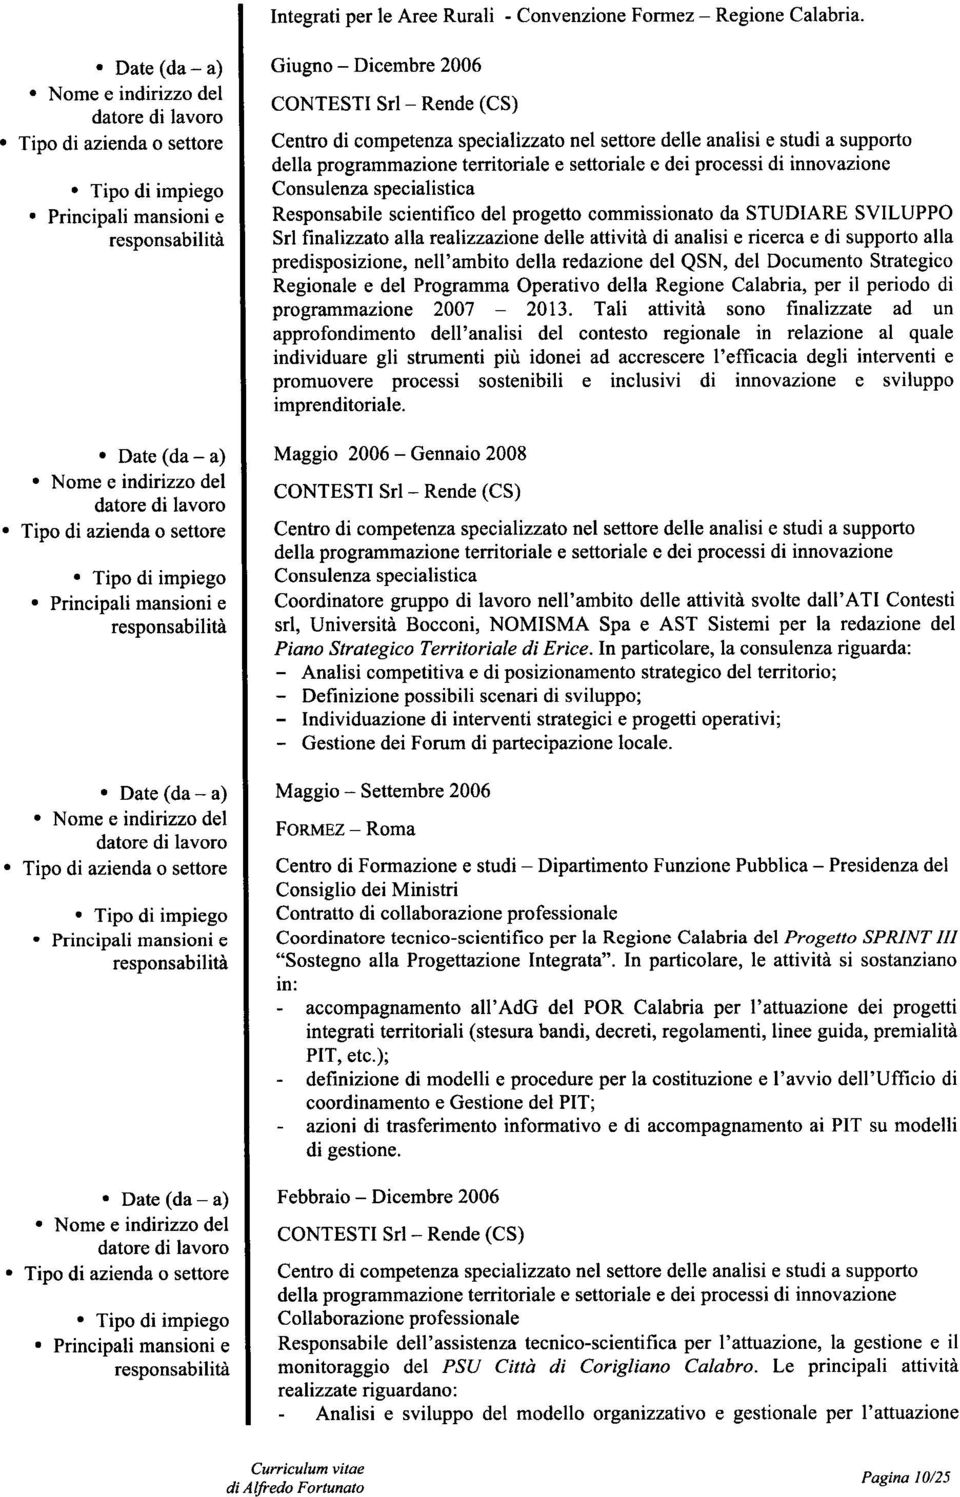 supporto alla predisposizione, nell'ambito della redazione del QSN, del Documento Strategico Regionale e del Programma Operativo della Regione Calabria, per il periodo di programmazione 2007-2013.